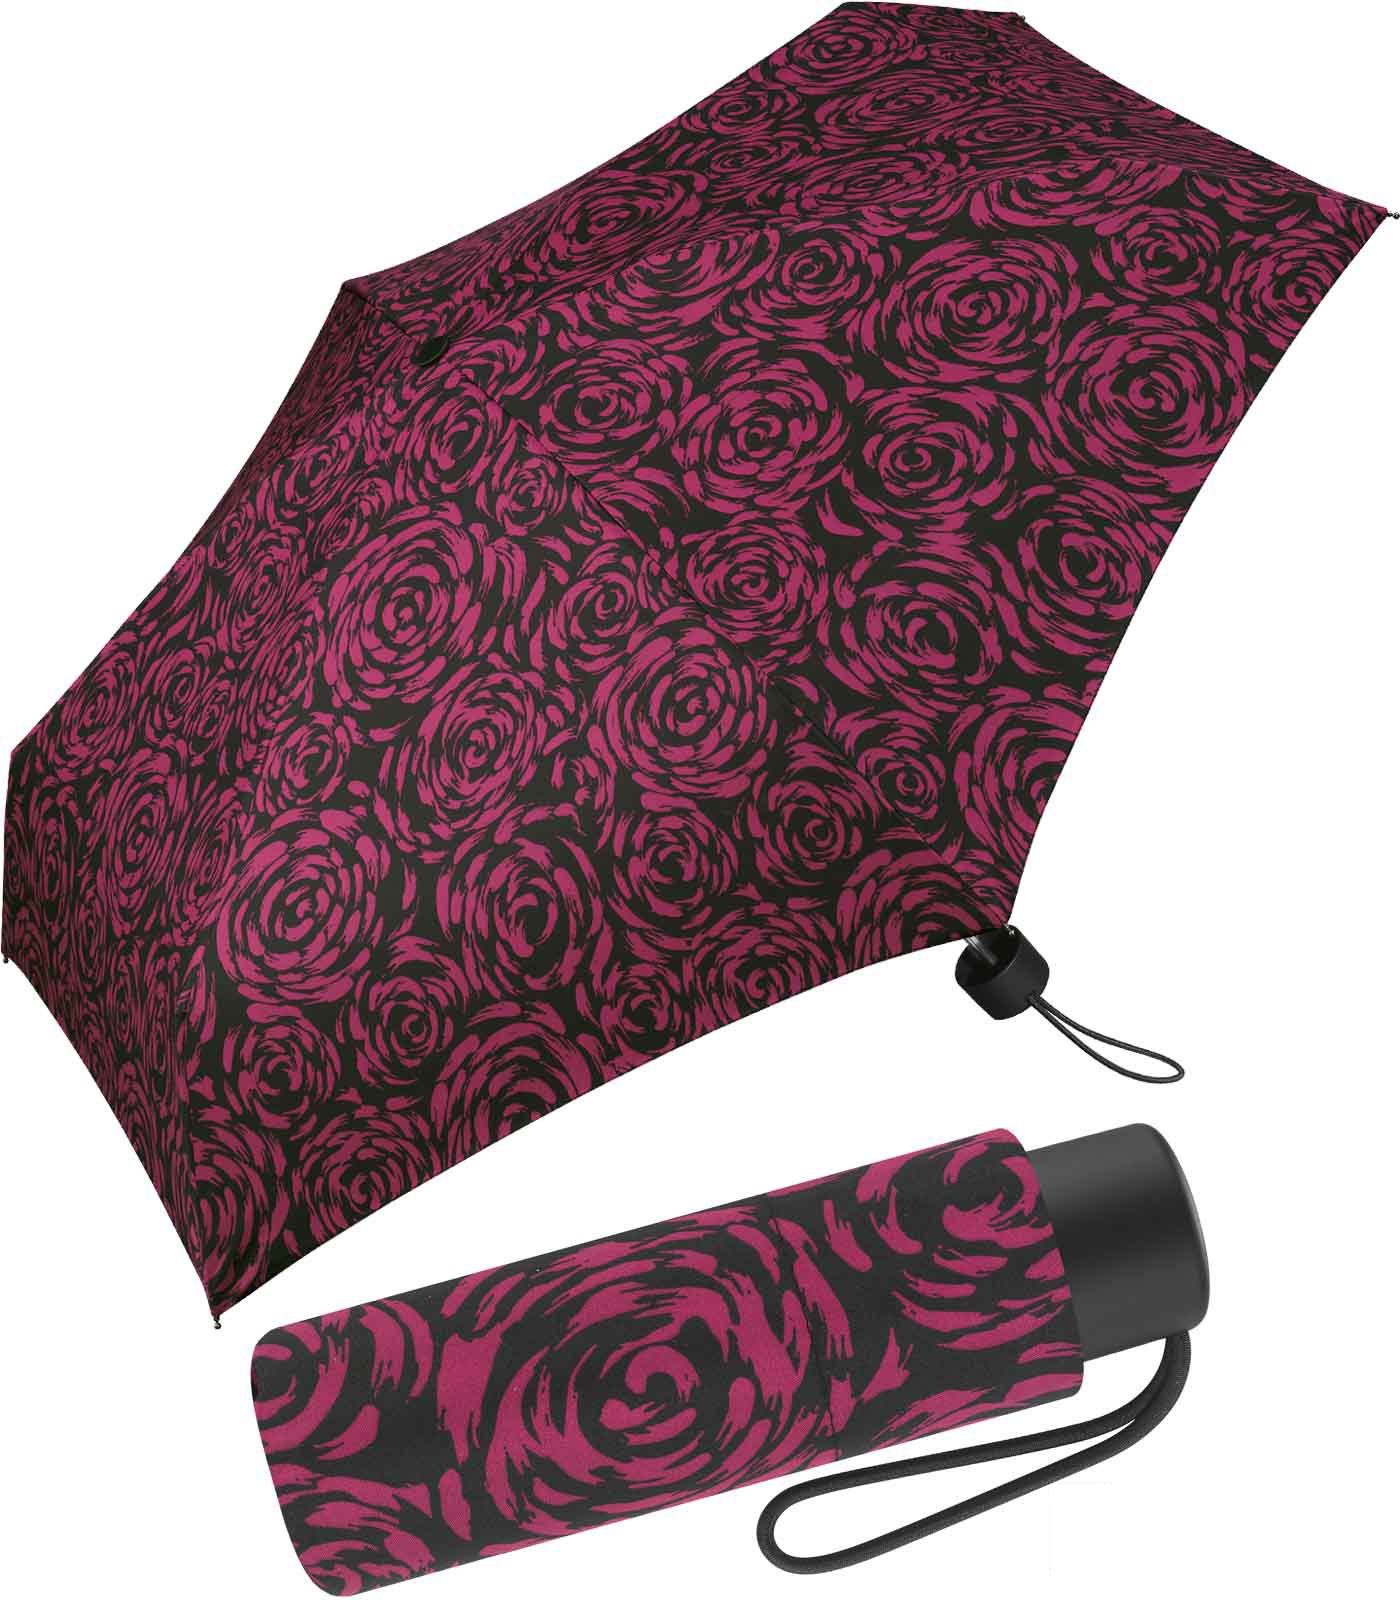 Pierre Cardin Taschenregenschirm winziger Damen-Taschenschirm mit Handöffner, mit wunderschöner Rosenblütenmalerei bordeaux